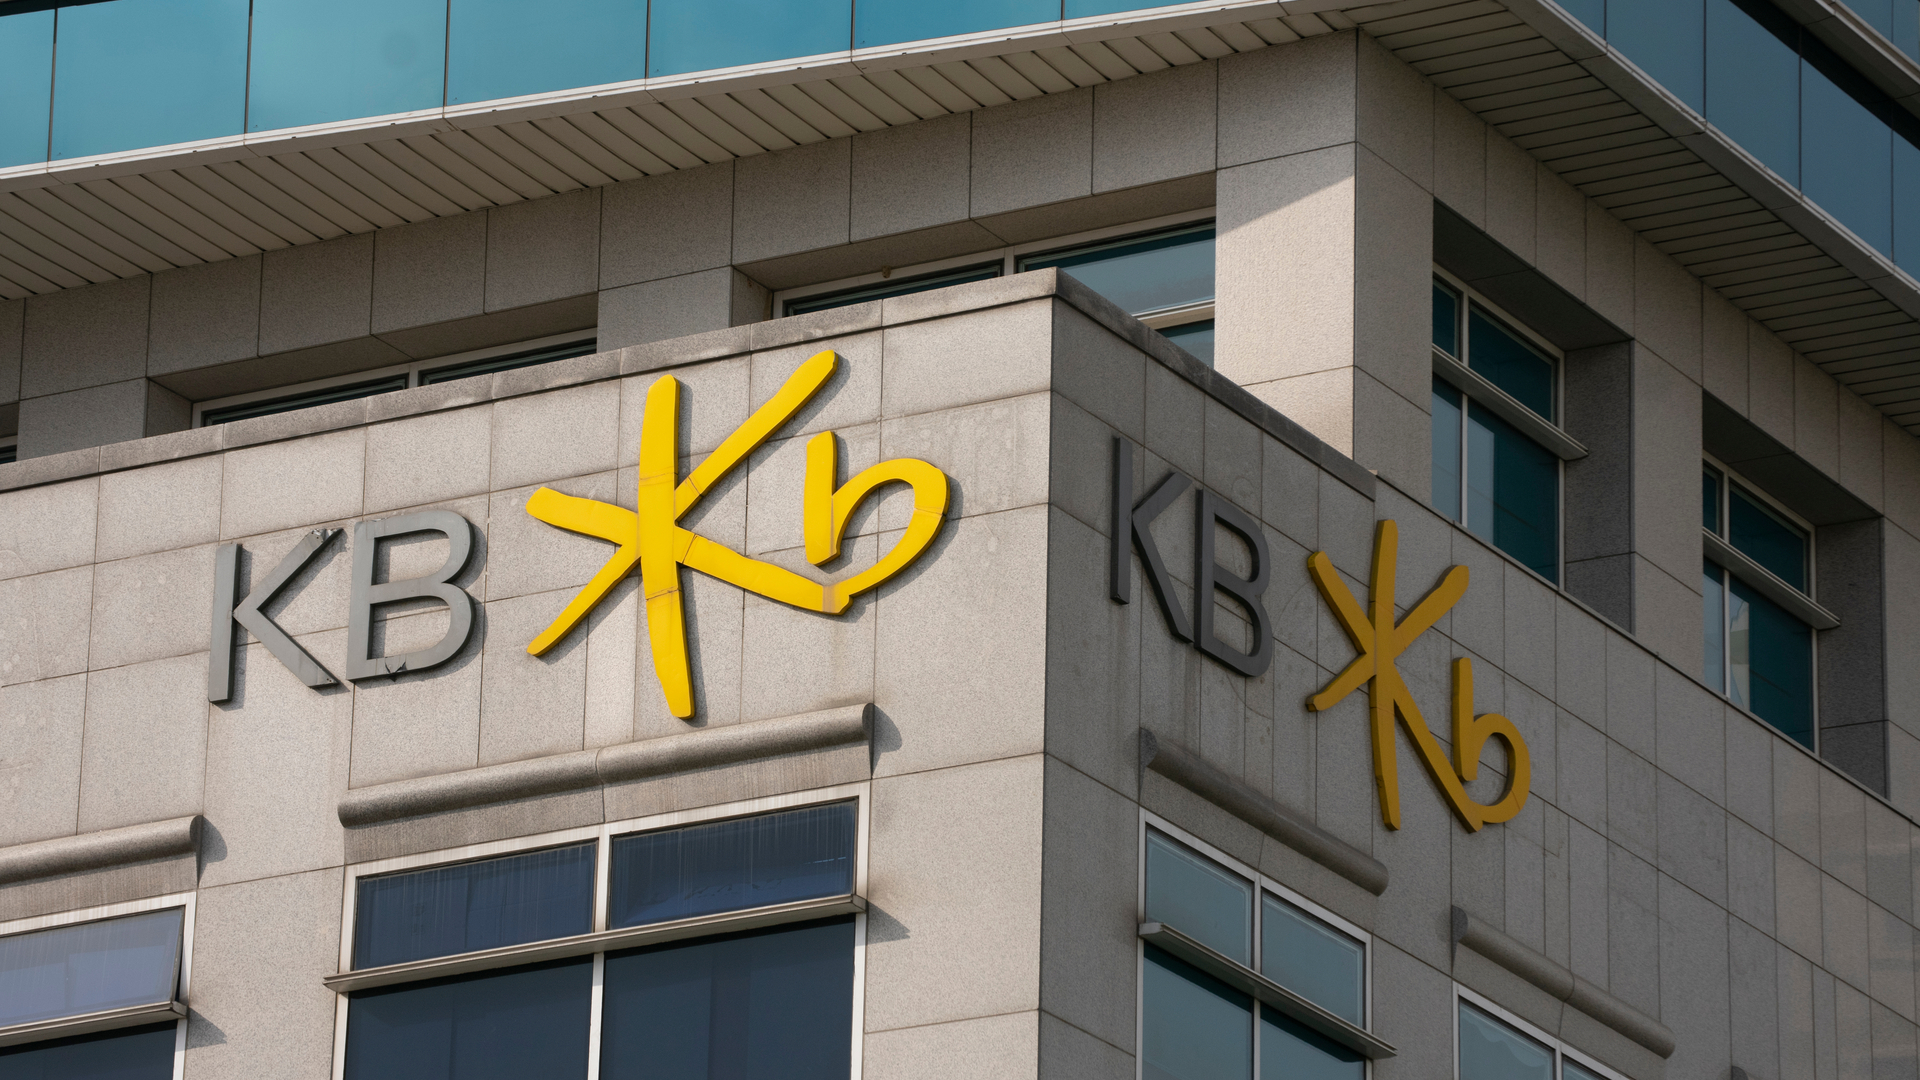 Кб ис банк. Кукмин банк Корея. KB Bank Корея. KB Kookmin Bank. KB «Kookmin Bank» логотип.